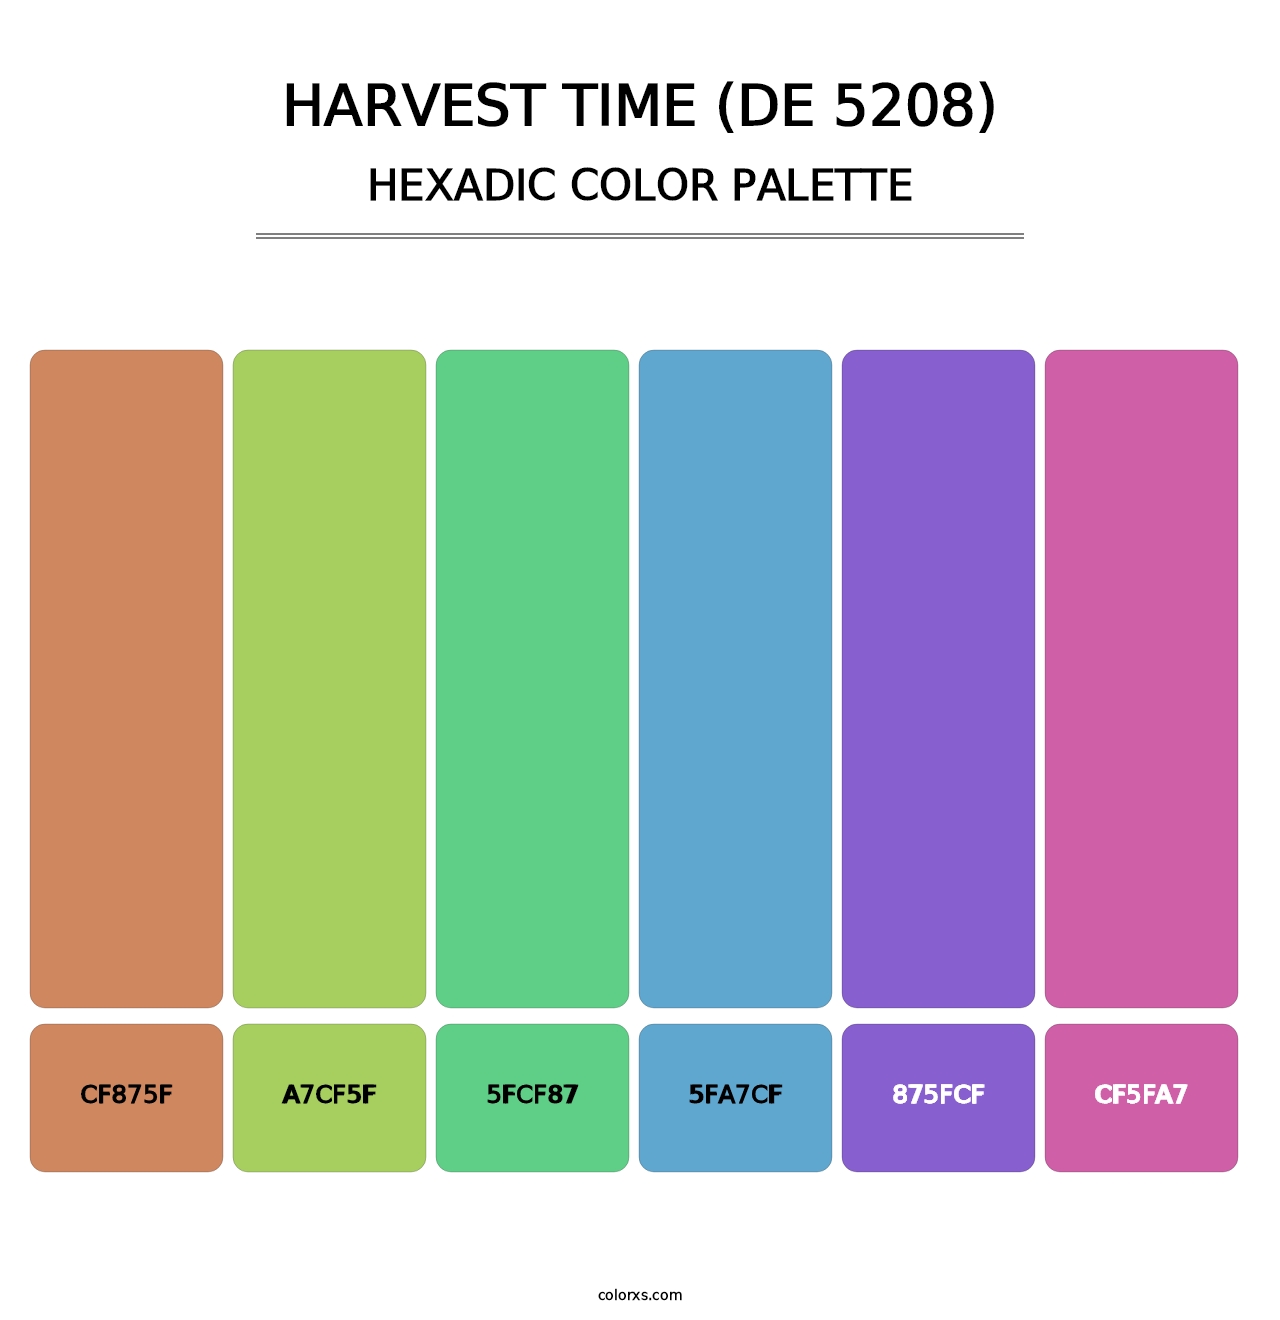 Harvest Time (DE 5208) - Hexadic Color Palette